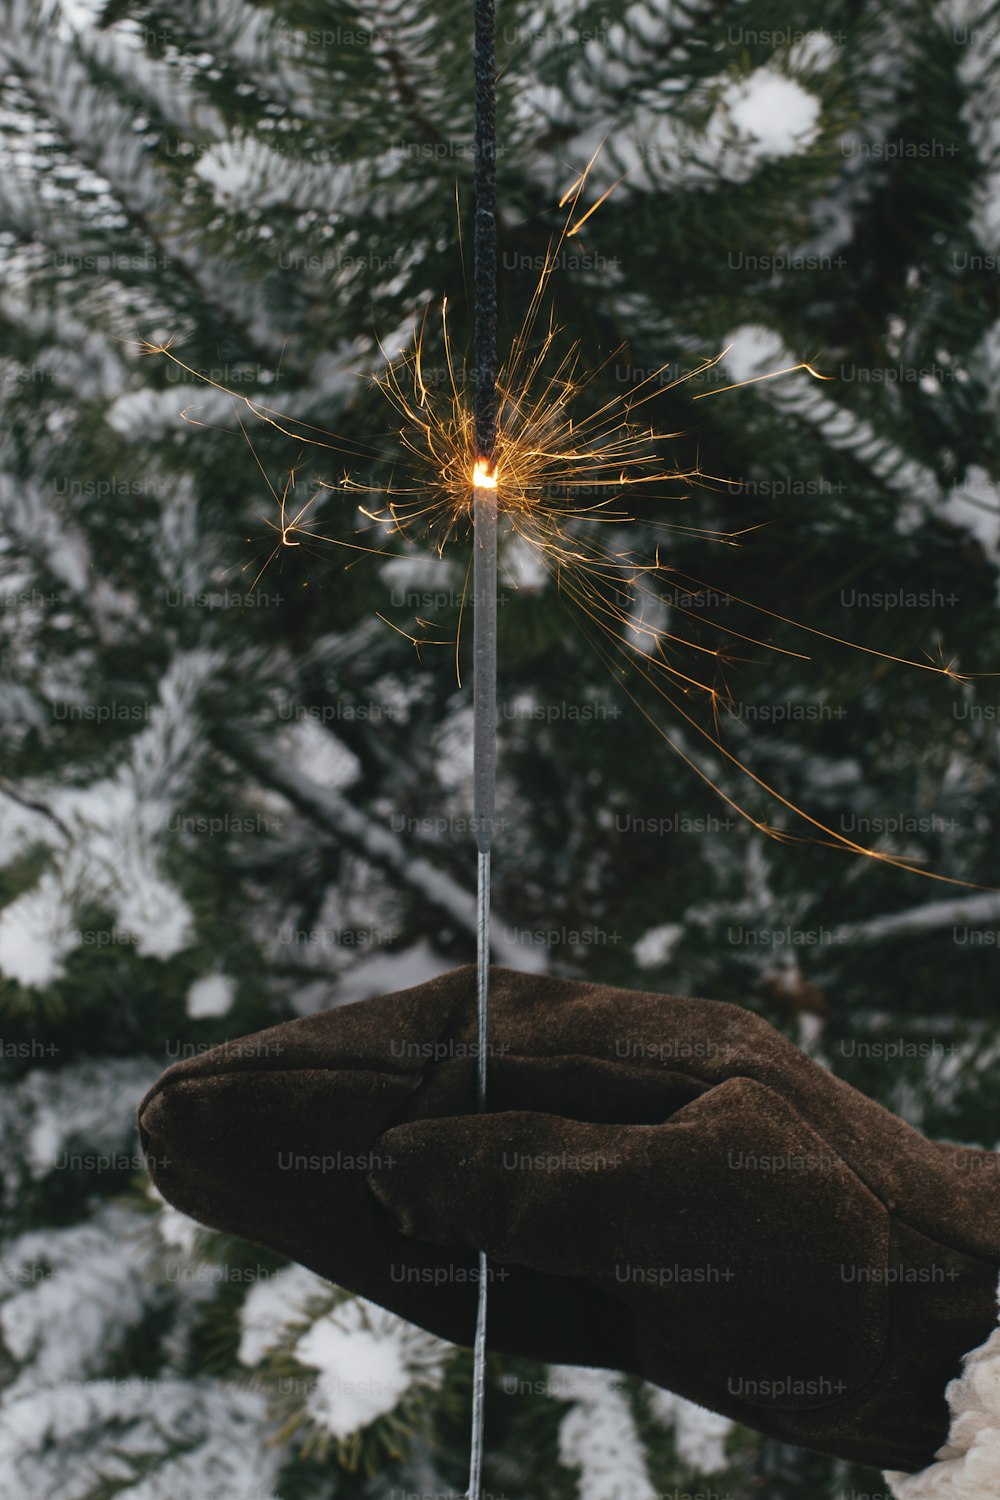 새해 복 많이 받으세요!  여자는 저녁에 눈 속에서 소나무 가지를 배경으로 빛나는 불꽃놀이를 하며 세련된 장갑을 끼고 있다. 불타는 폭죽을 들고 손. 분위기 있는 마법의 순간. 즐거운 휴일 보내세요!